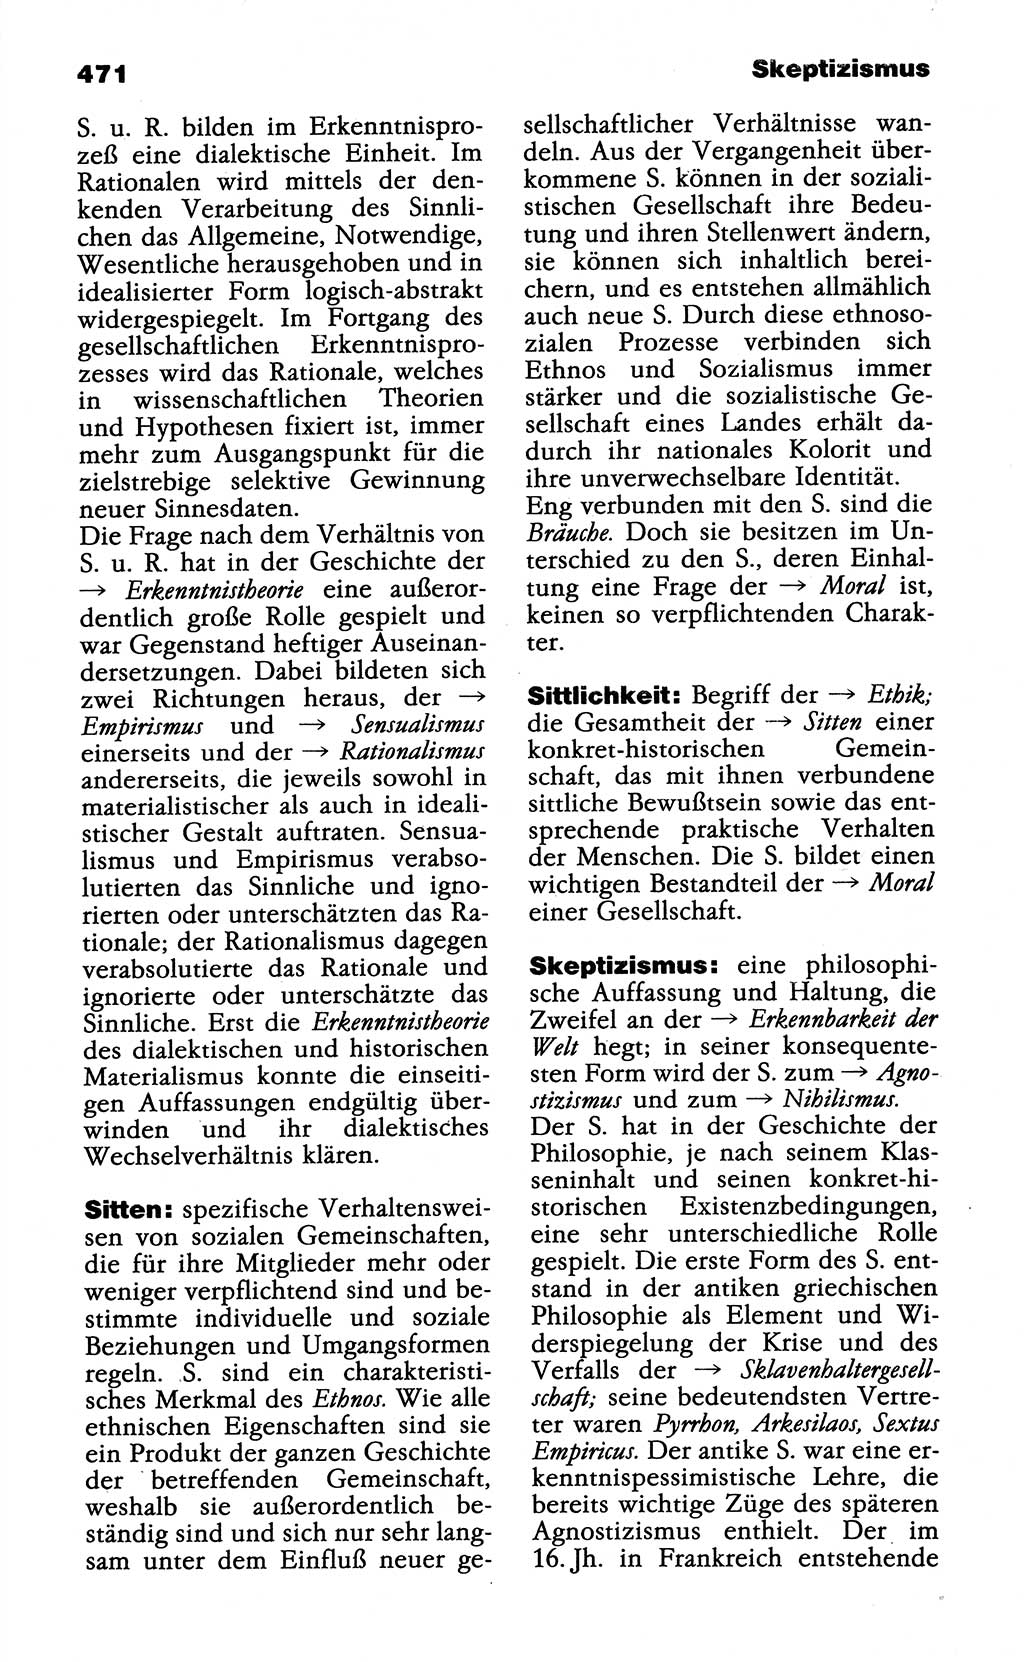 Wörterbuch der marxistisch-leninistischen Philosophie [Deutsche Demokratische Republik (DDR)] 1985, Seite 471 (Wb. ML Phil. DDR 1985, S. 471)